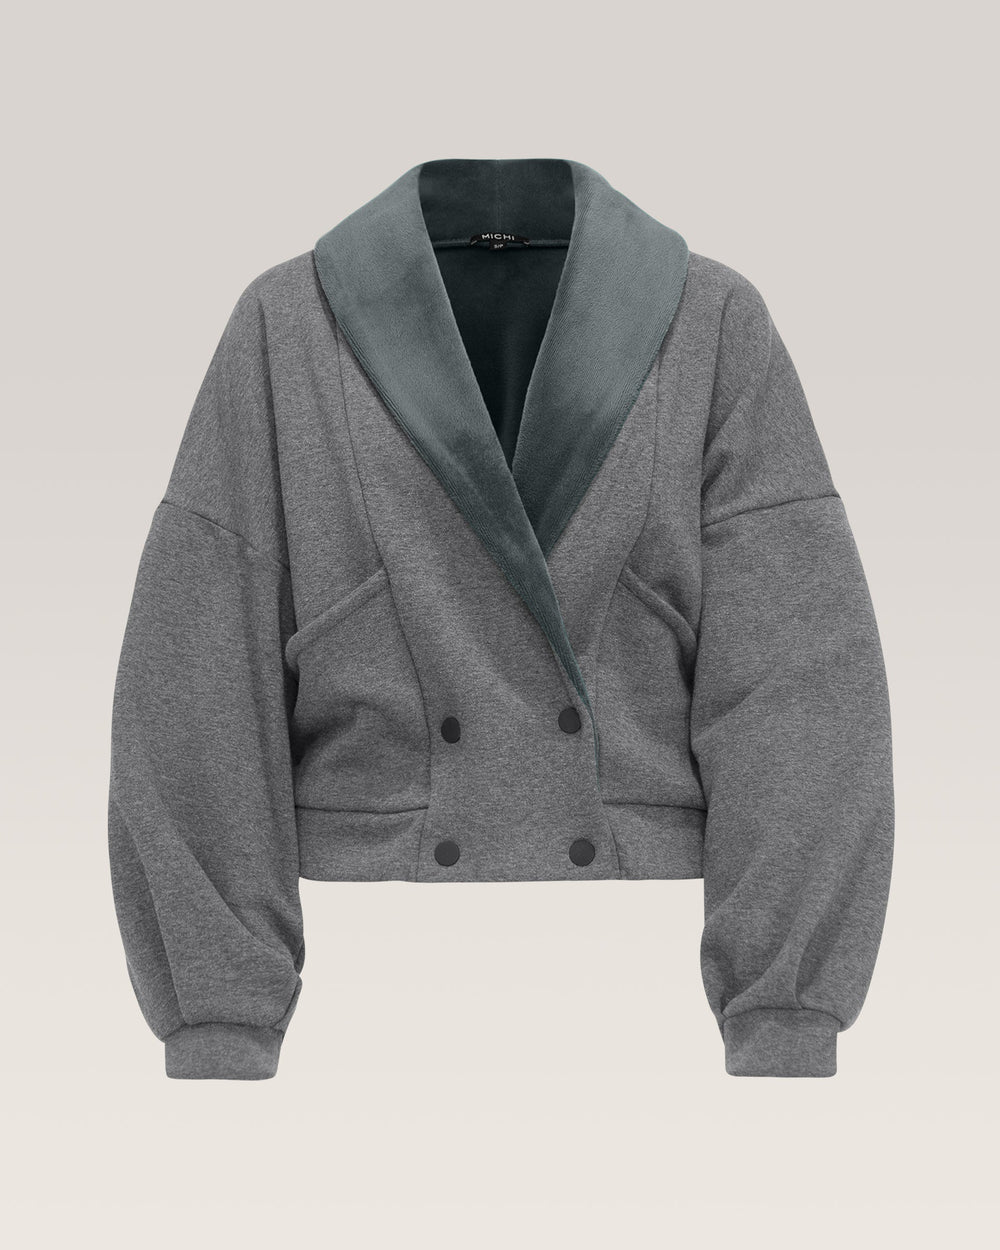 Rebel Jacket - Charcoal Grey